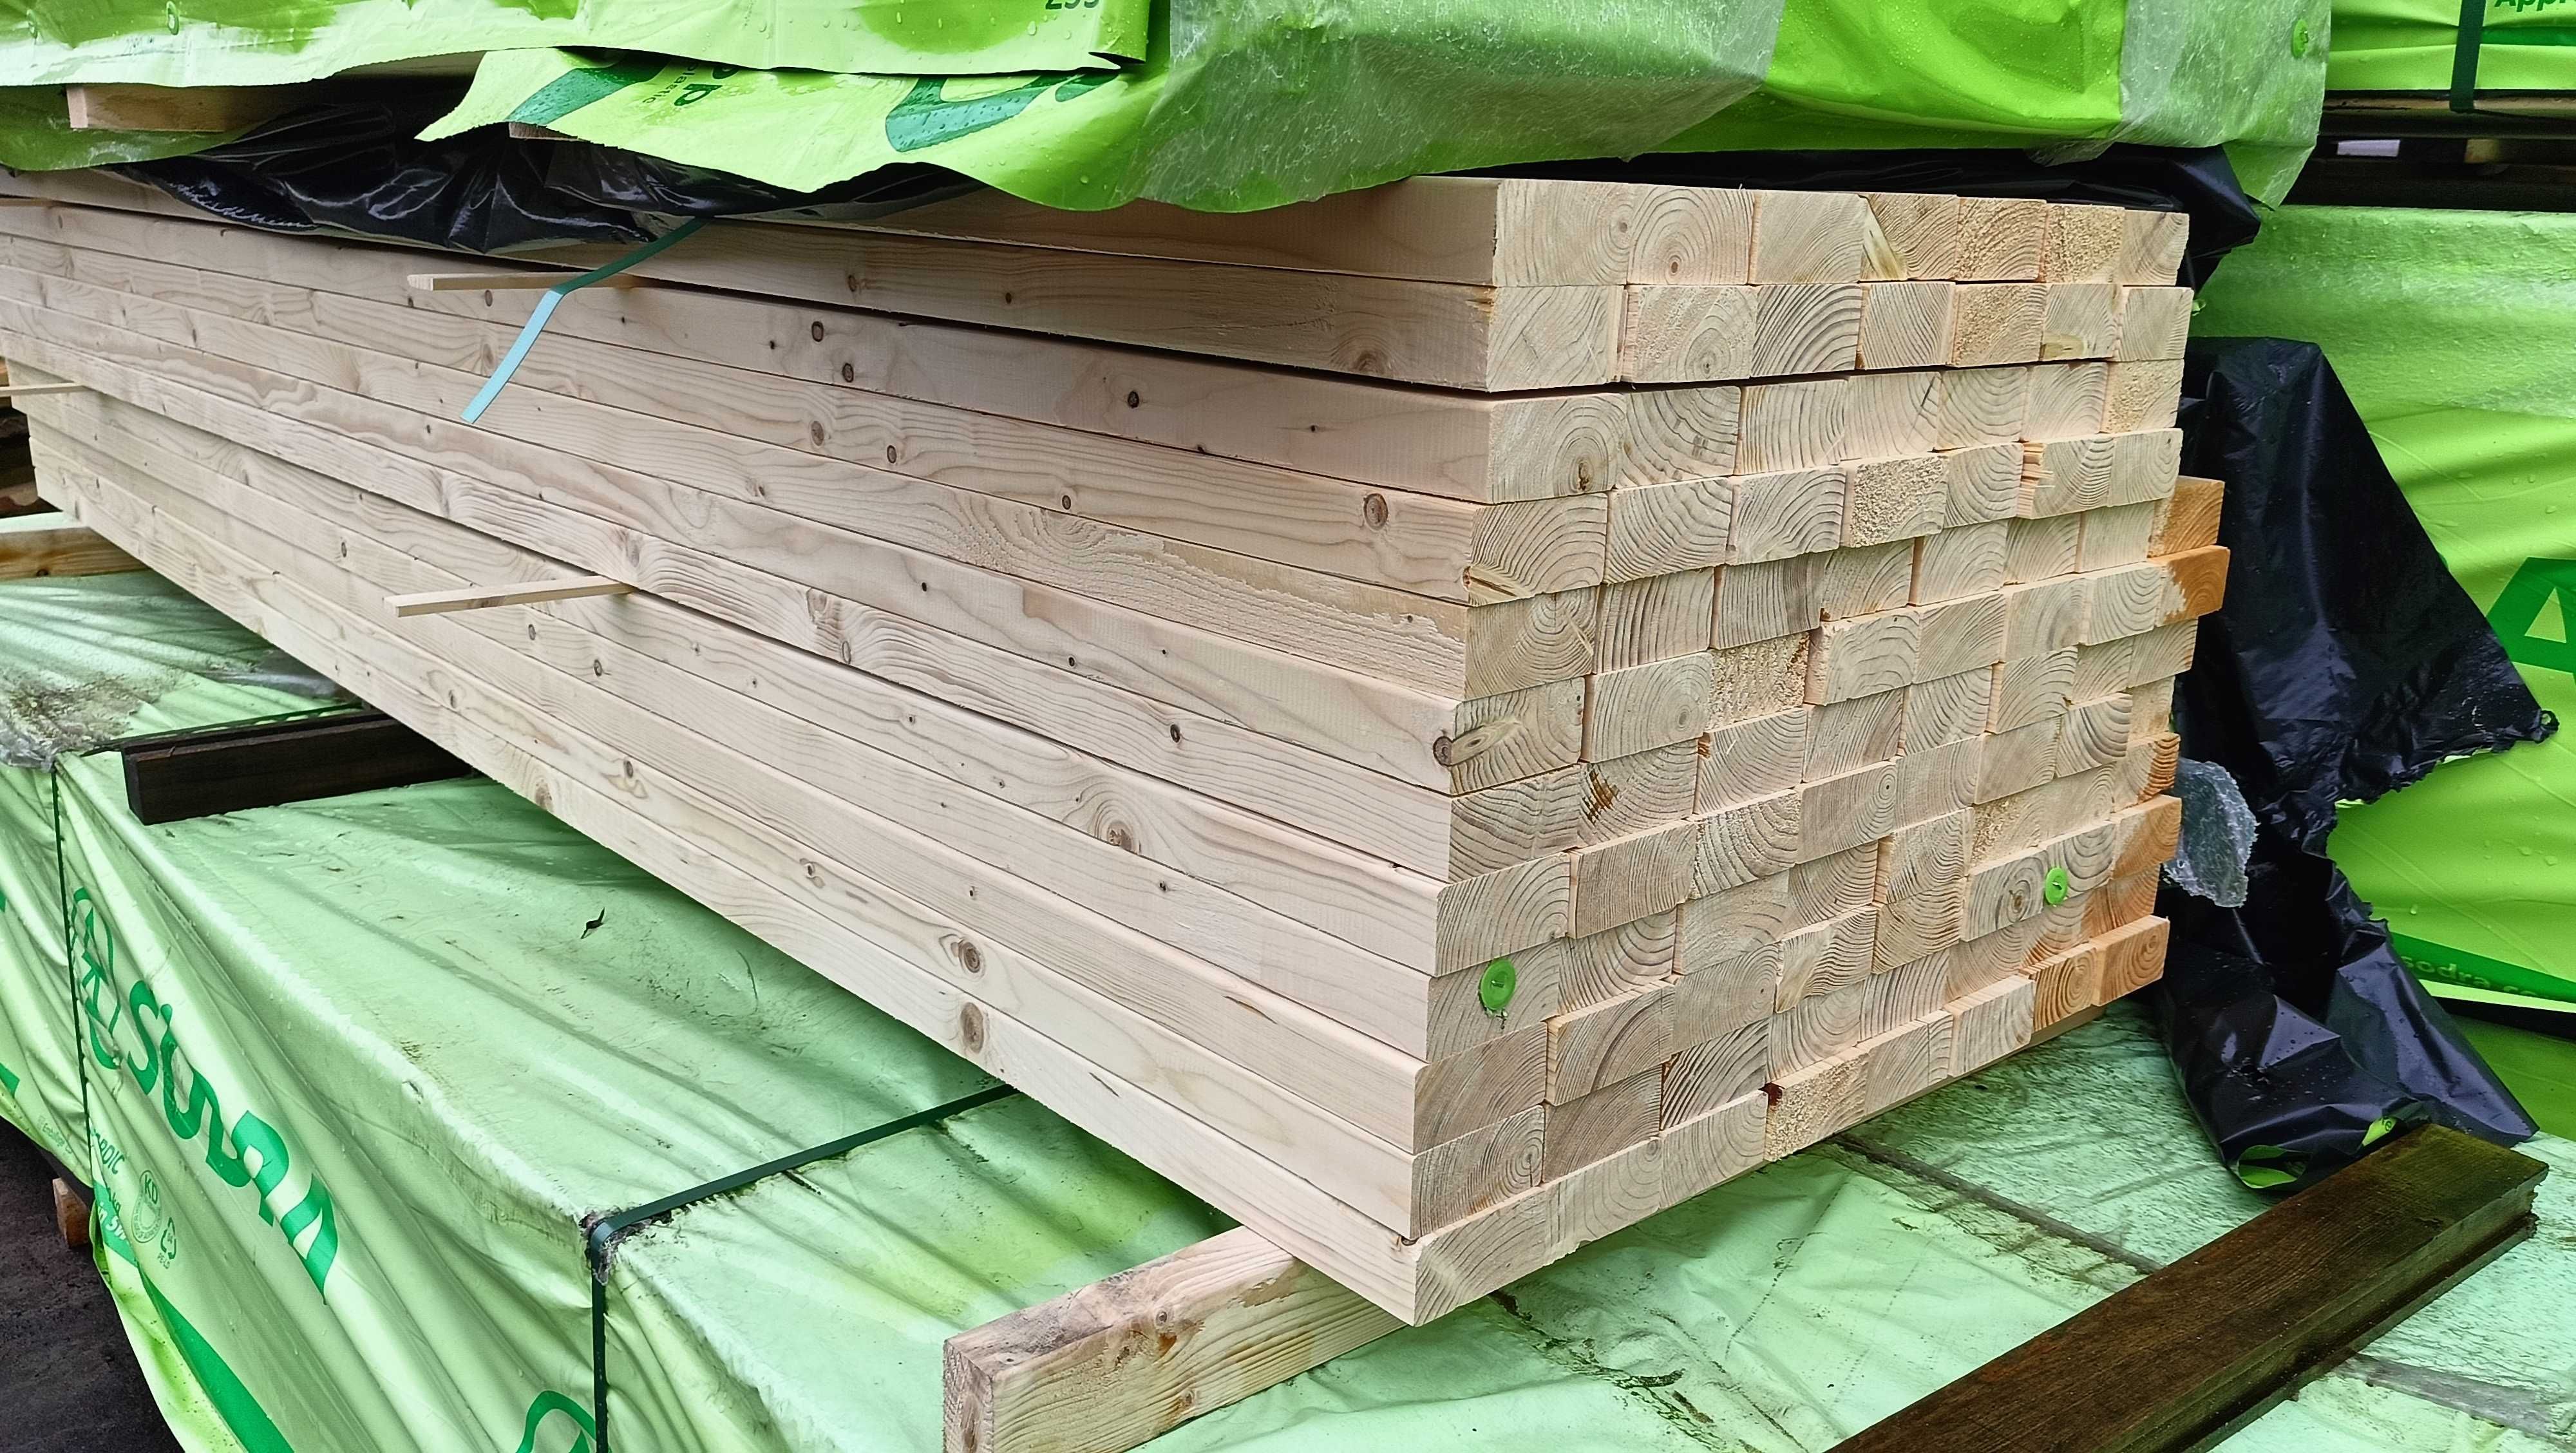 Belka 5x10 c24 sucha heblowana, drewno konstrukcyjne